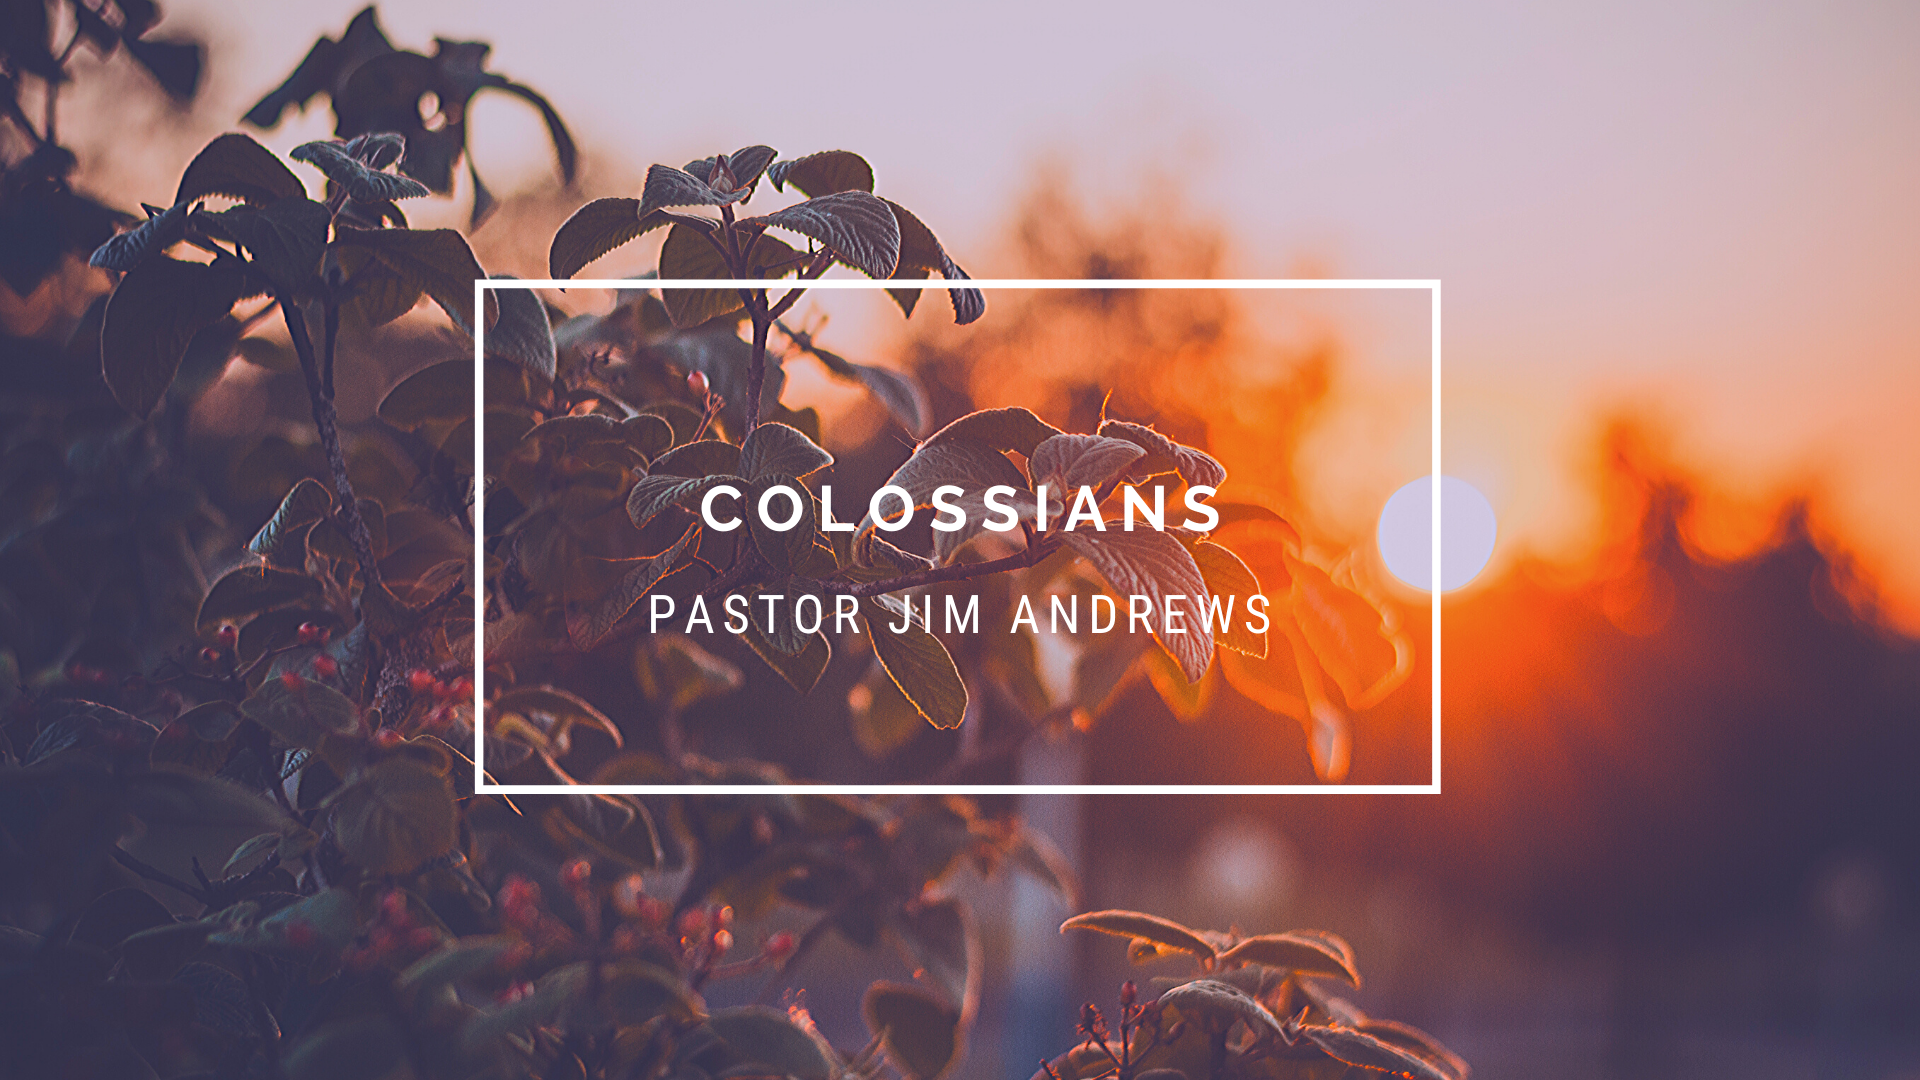 Colossians 2:20-3:1